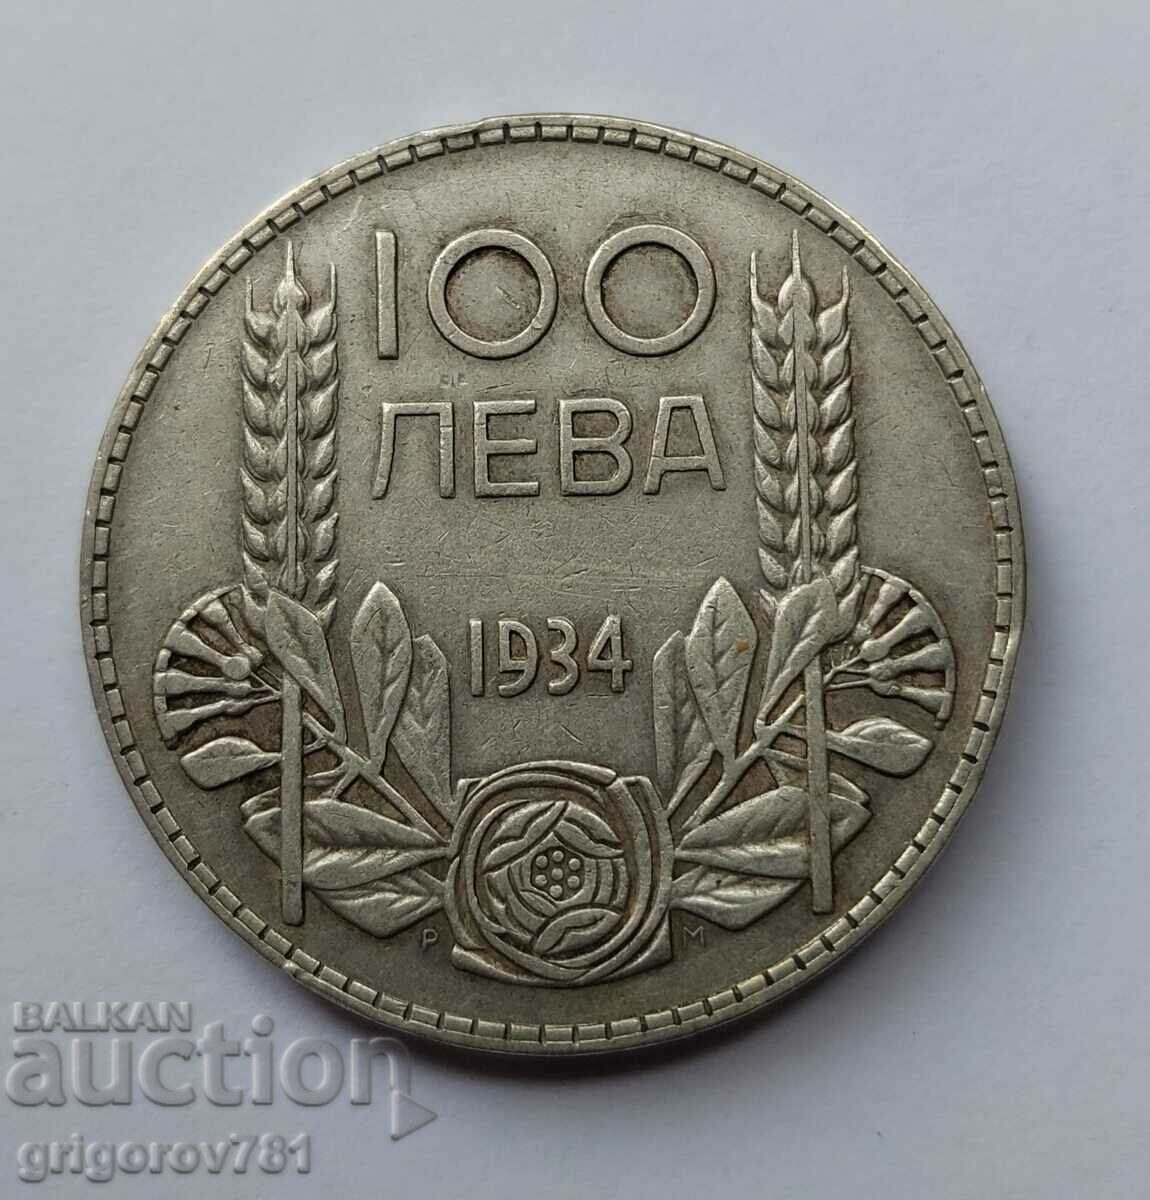 Ασήμι 100 λέβα Βουλγαρία 1934 - ασημένιο νόμισμα #41